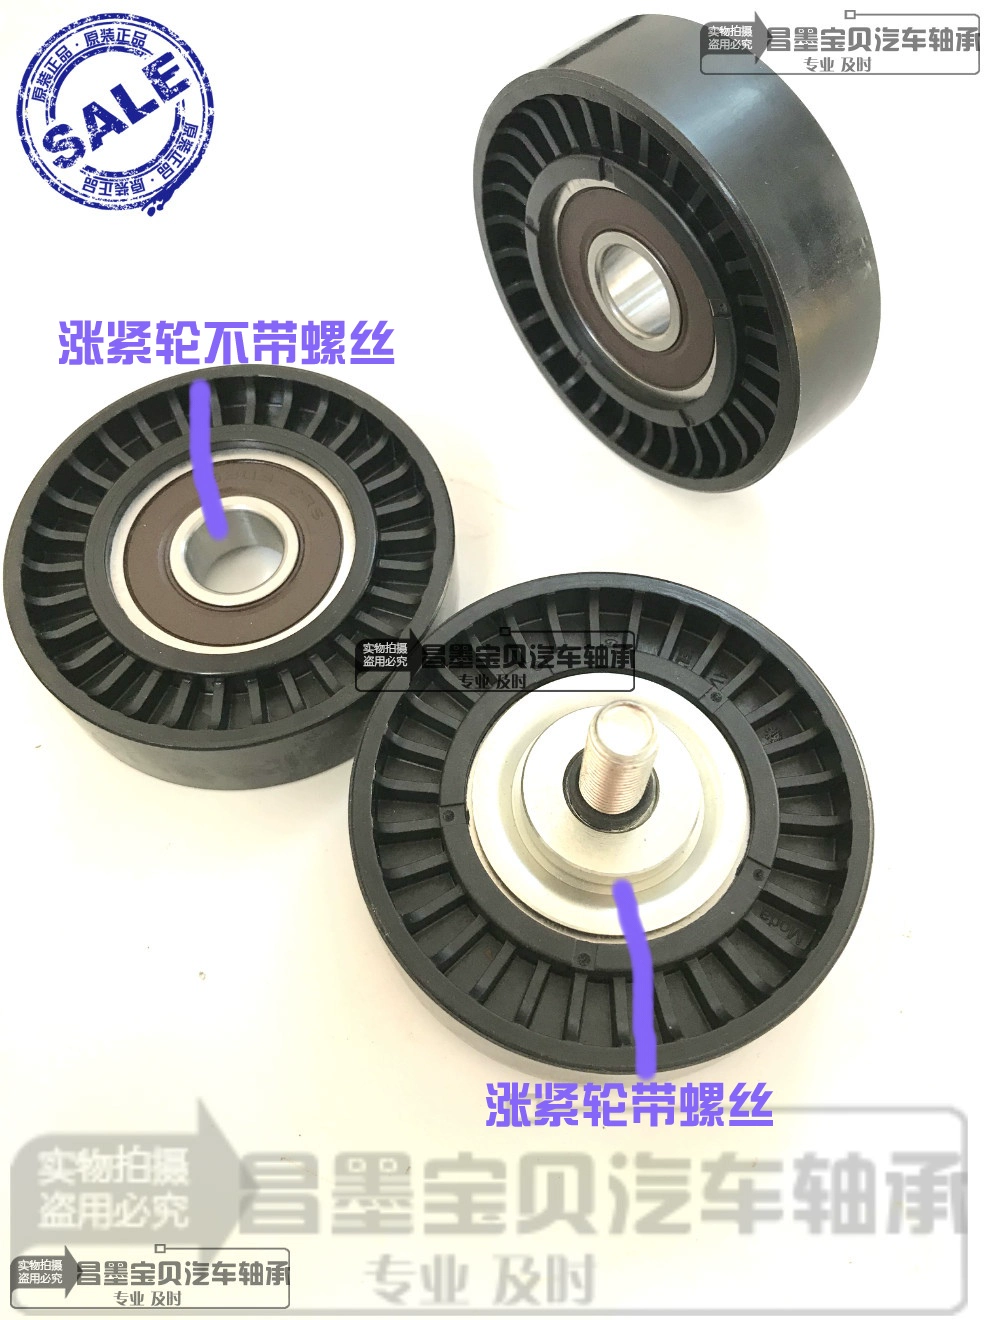 Thích ứng của Shenxian F30 T20 Gausu IX5 7 Rui Xing M70 Trình tạo để thắt chặt Trục bánh xe mang theo điều kiện LAZY Bánh xe lười biếng hộp số hành tinh vỏ hộp số 